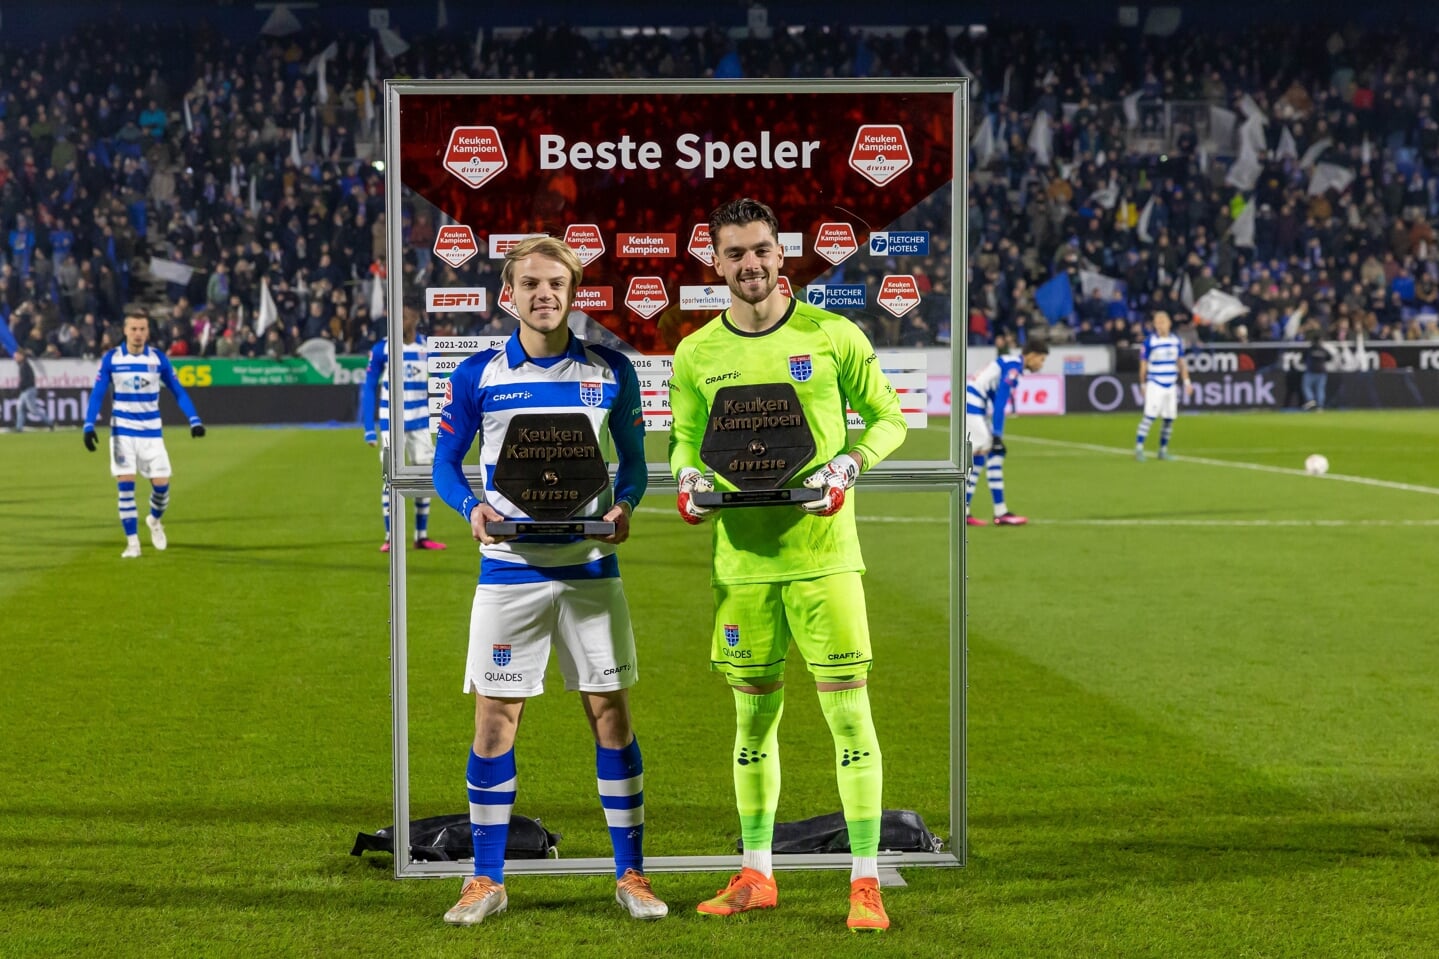 Beste speler Thomas van den Belt (l) en beste keeper Jasper Schendelaar van de tweede periode kregen vrijdag hun bronzen schild uitgereikt.. 